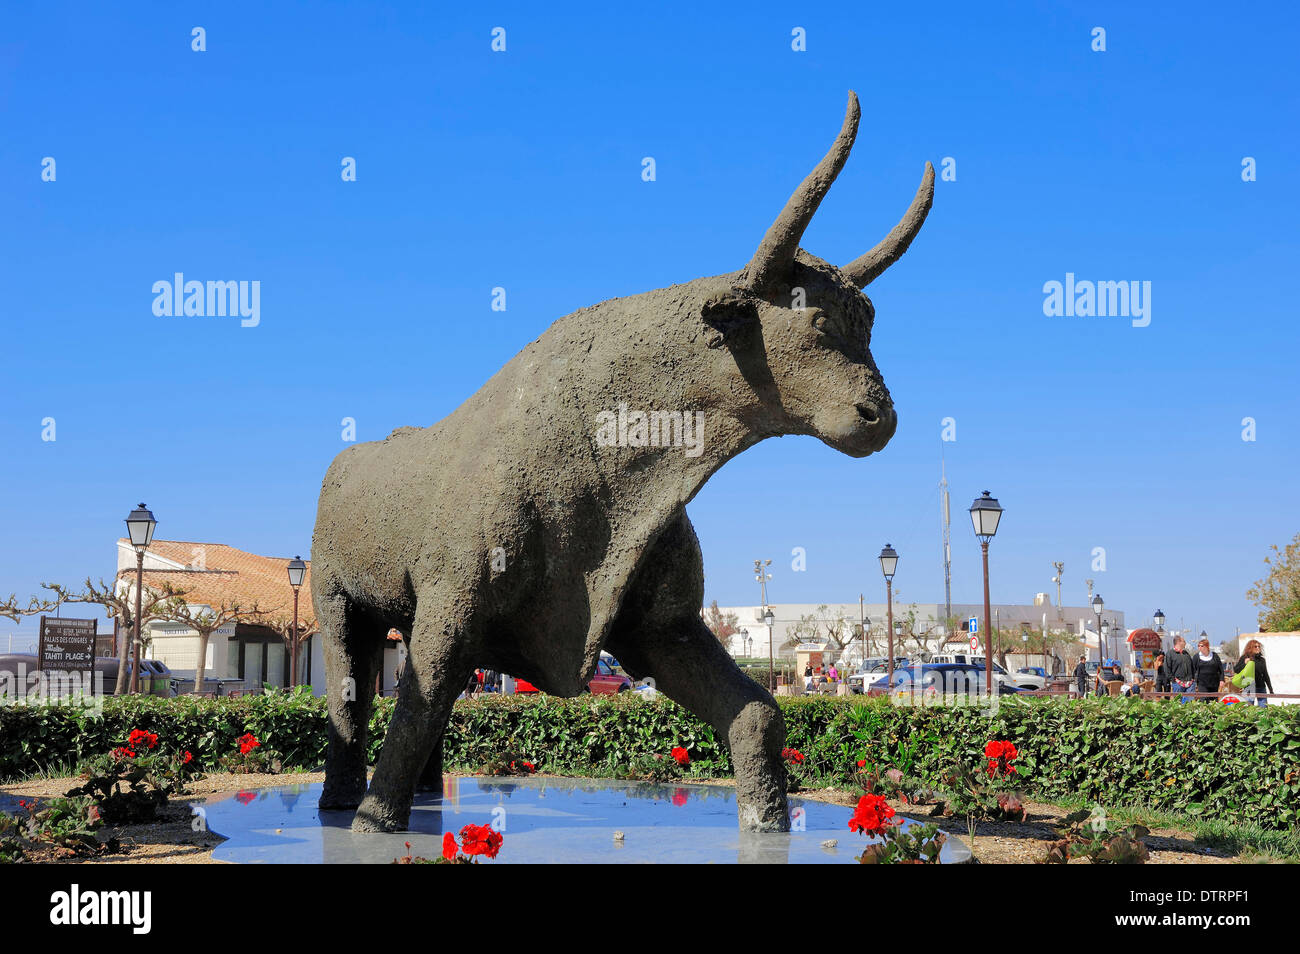 Statue of Camargue Bull, Les Saintes-Maries-de-la-Mer, Camargue, Bouches-du-Rhone, Provence-Alpes-Cote d'Azur, Southern France Stock Photo